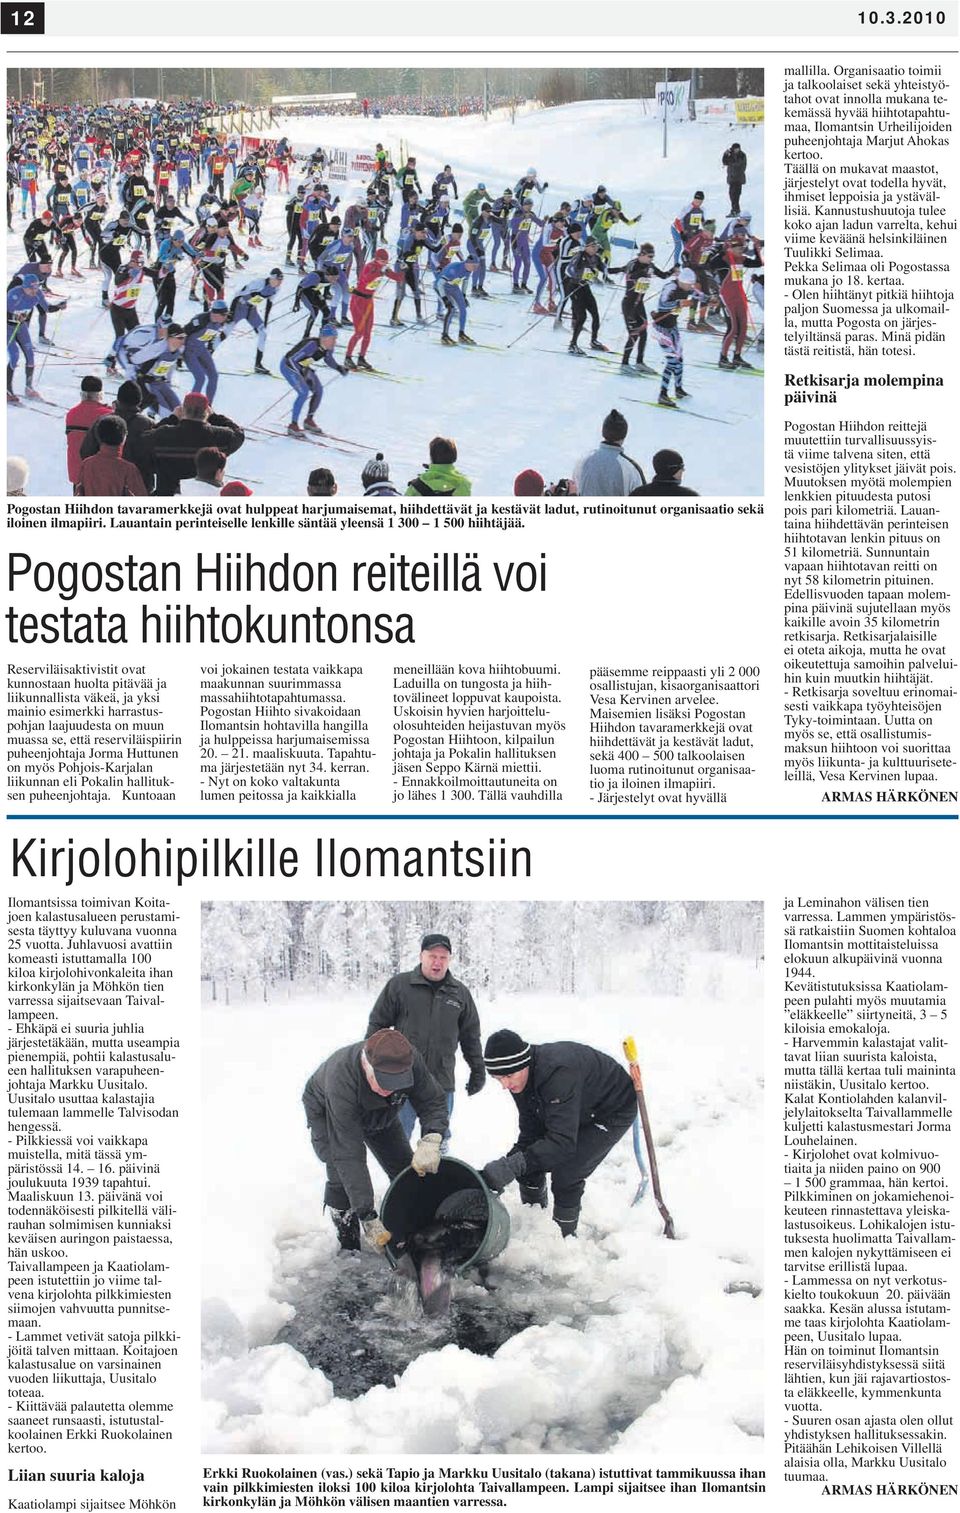 Pekka Selimaa oli Pogostassa mukana jo 18. kertaa. - Olen hiihtänyt pitkiä hiihtoja paljon Suomessa ja ulkomailla, mutta Pogosta on järjestelyiltänsä paras. Minä pidän tästä reitistä, hän totesi.